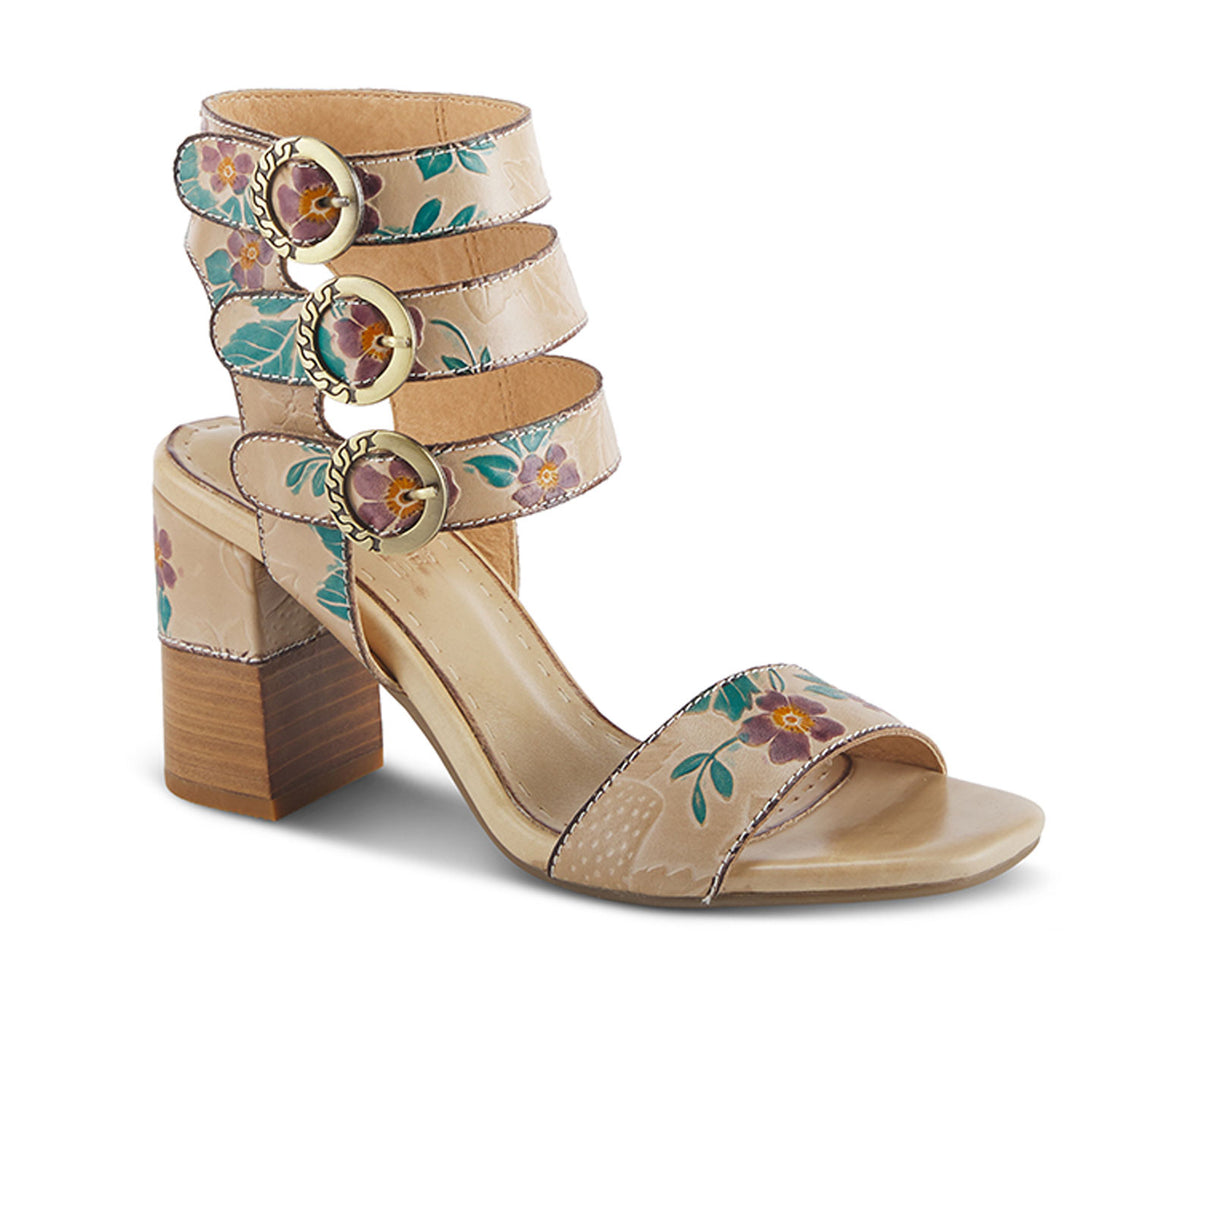 L'Artiste Rheba Heeled Sandal (Women) - Beige Multi Leather Sandals - Heeled - The Heel Shoe Fitters